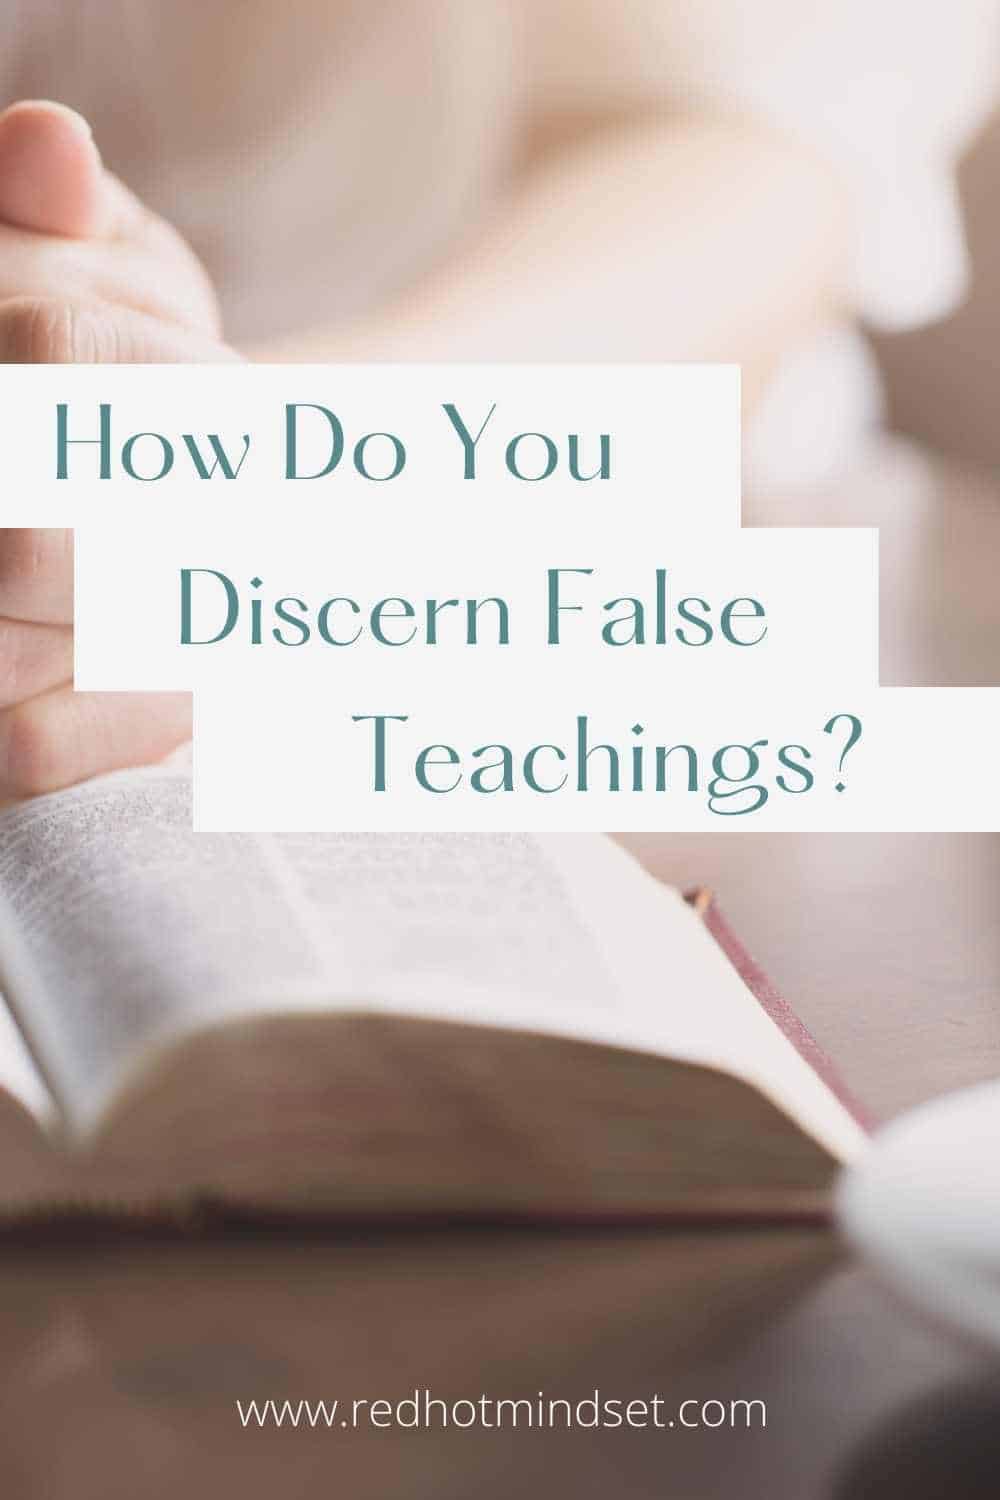 How Do You Discern False Teaching?